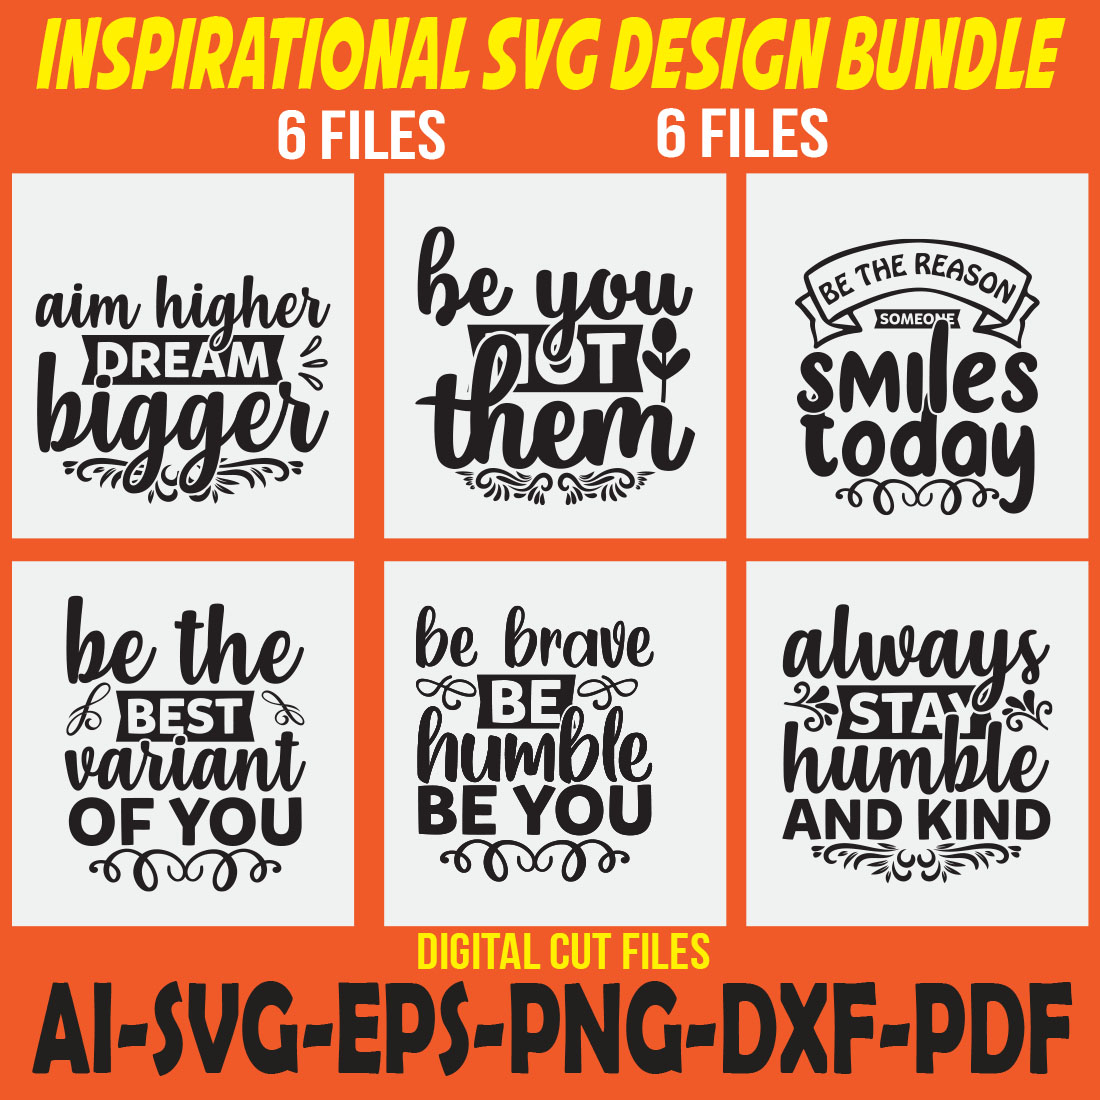 Inspirational SVG Design Bundle cover image.